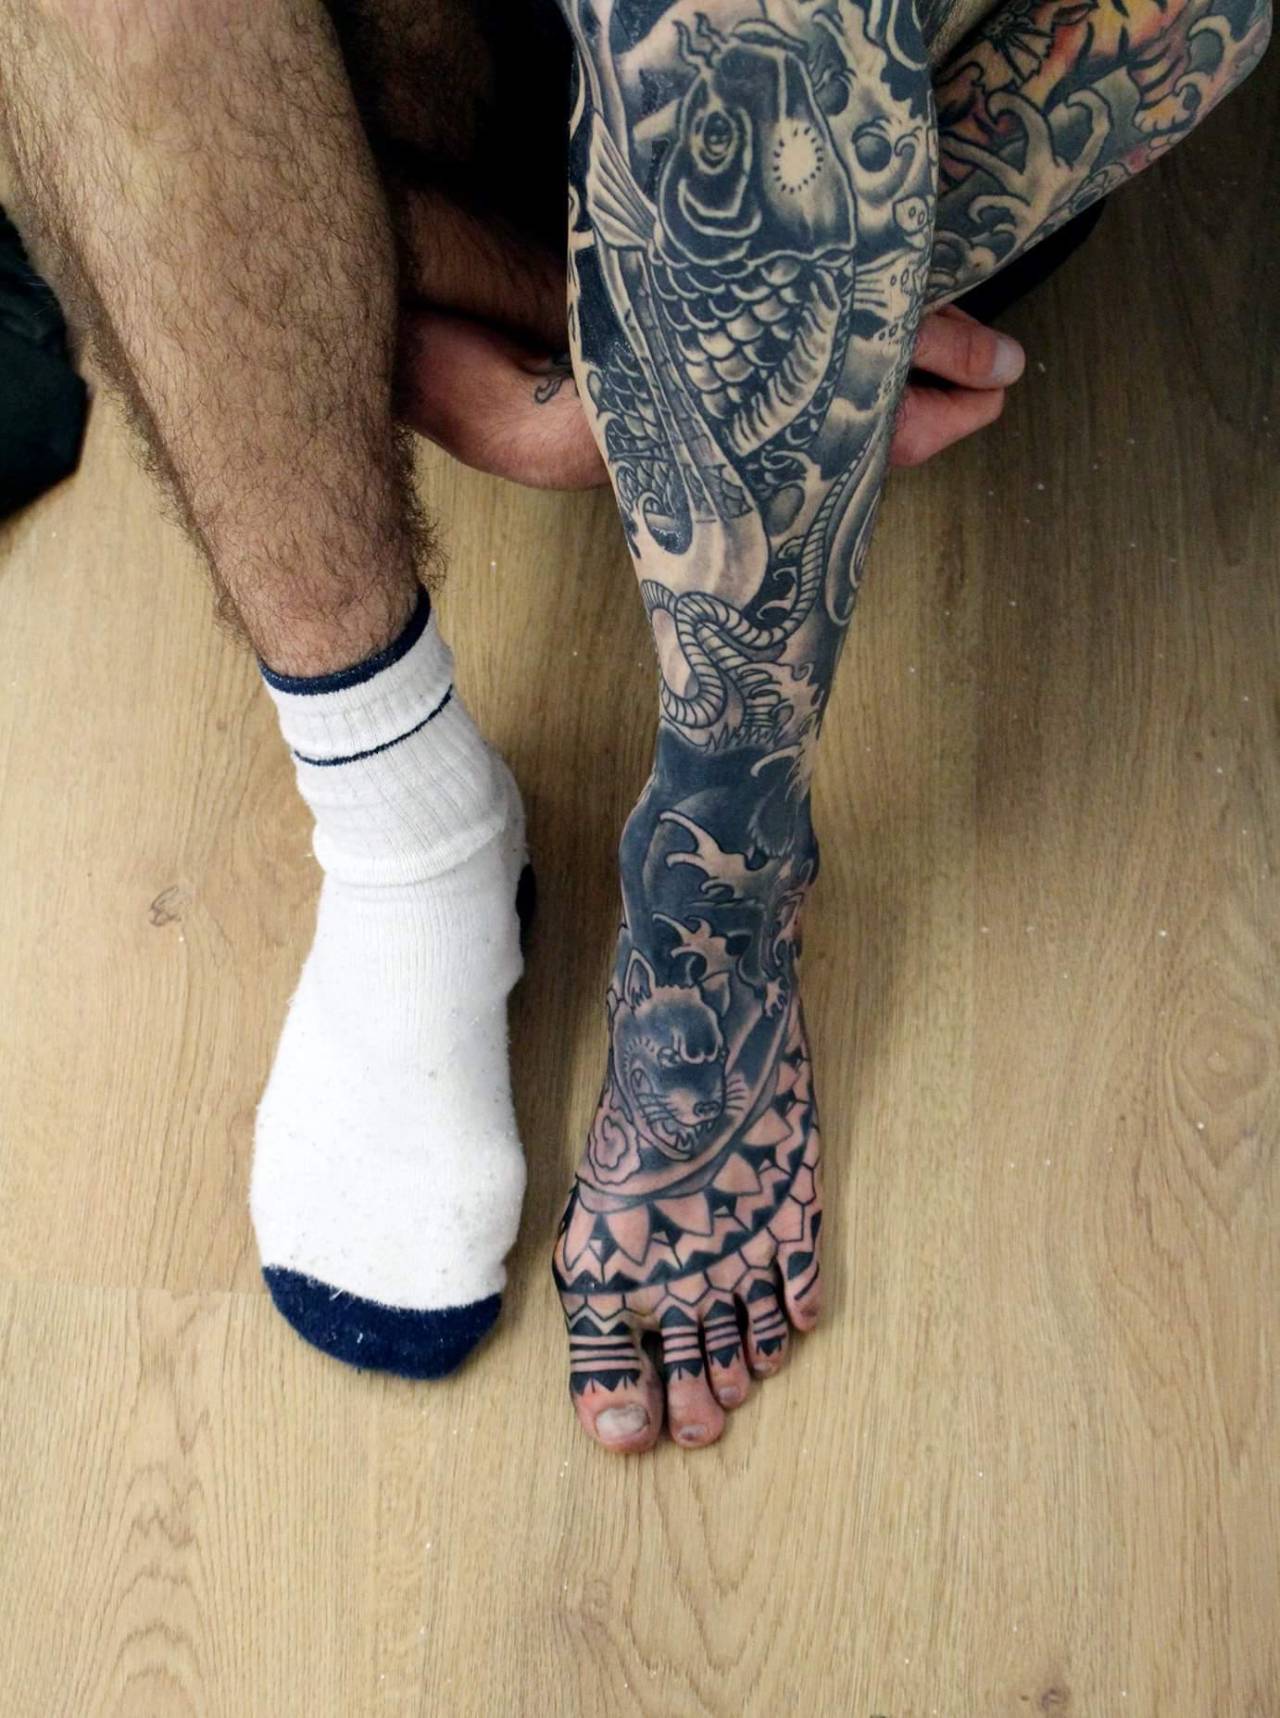 22 Foot Tattoos For Men